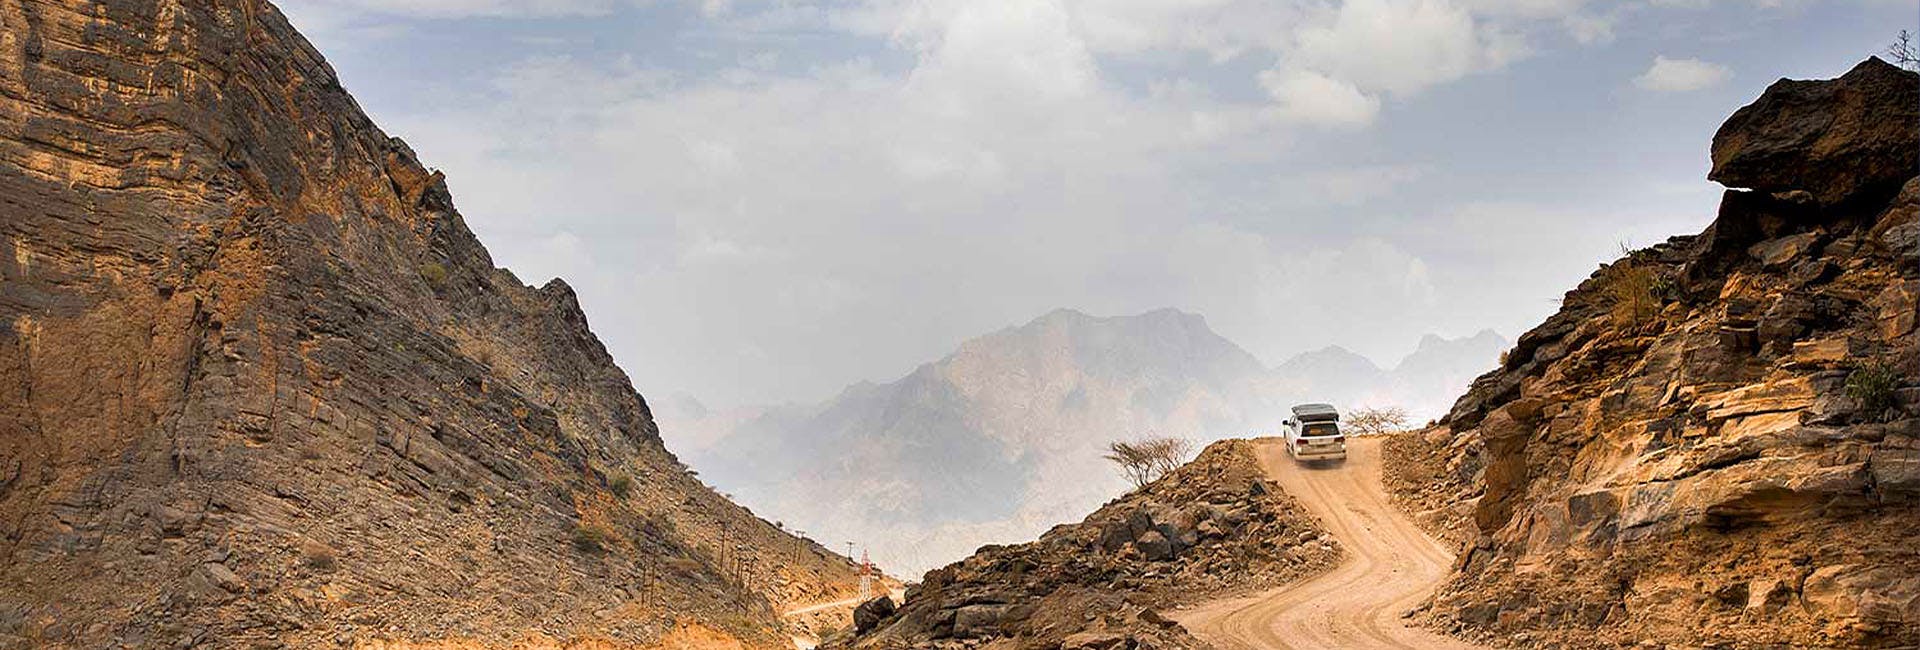 Offroad-Fahrt im Wadi Shab, sanftes Trekking und Badeerlebnis